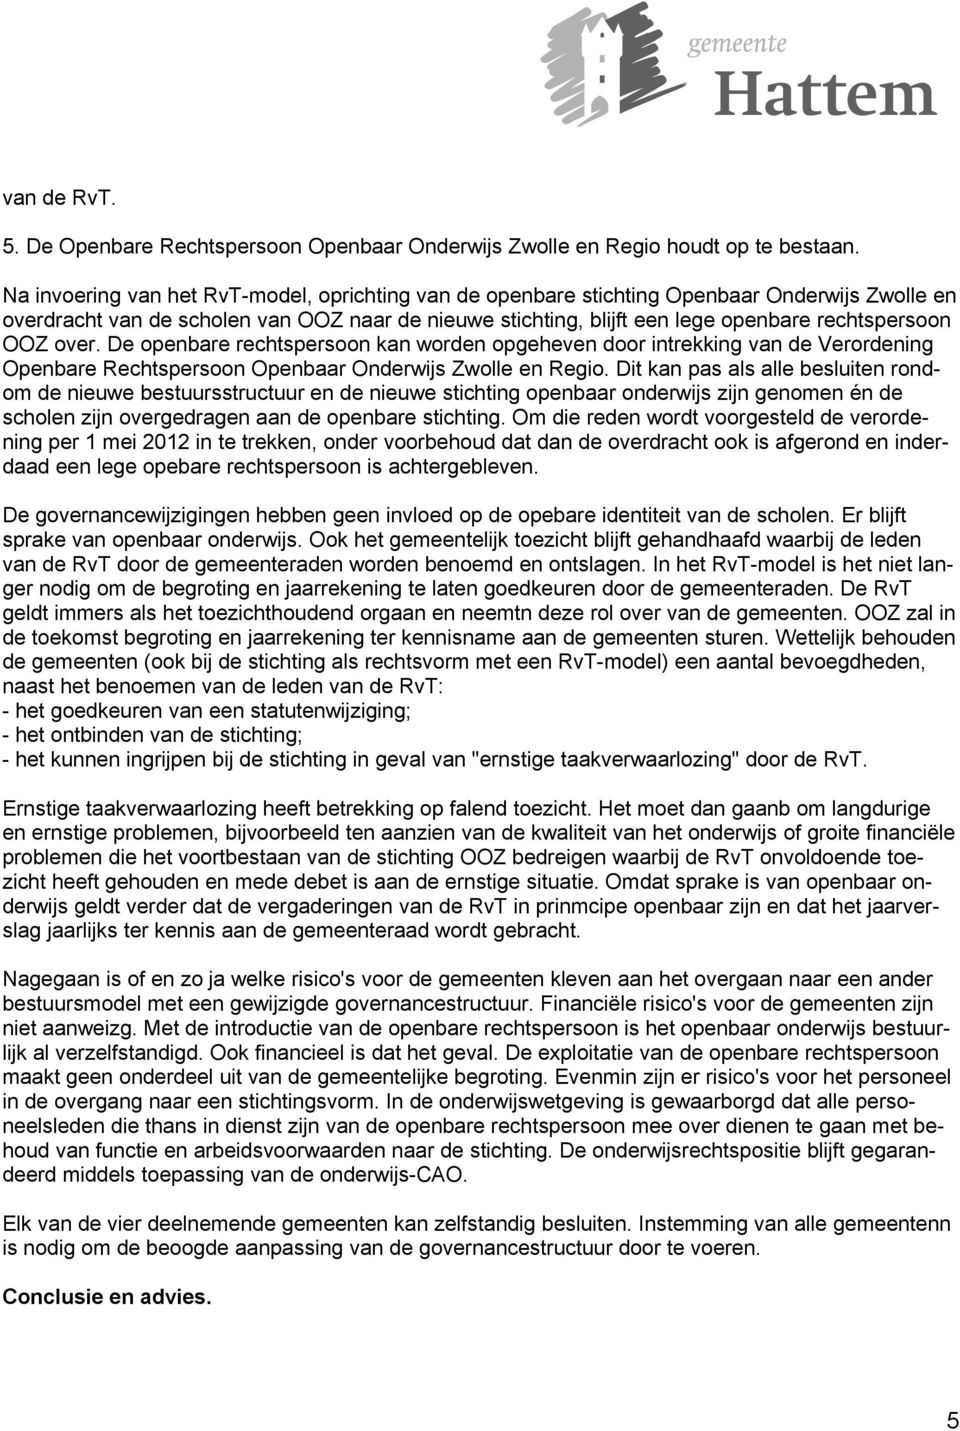 OOZ over. De openbare rechtspersoon kan worden opgeheven door intrekking van de Verordening Openbare Rechtspersoon Openbaar Onderwijs Zwolle en Regio.